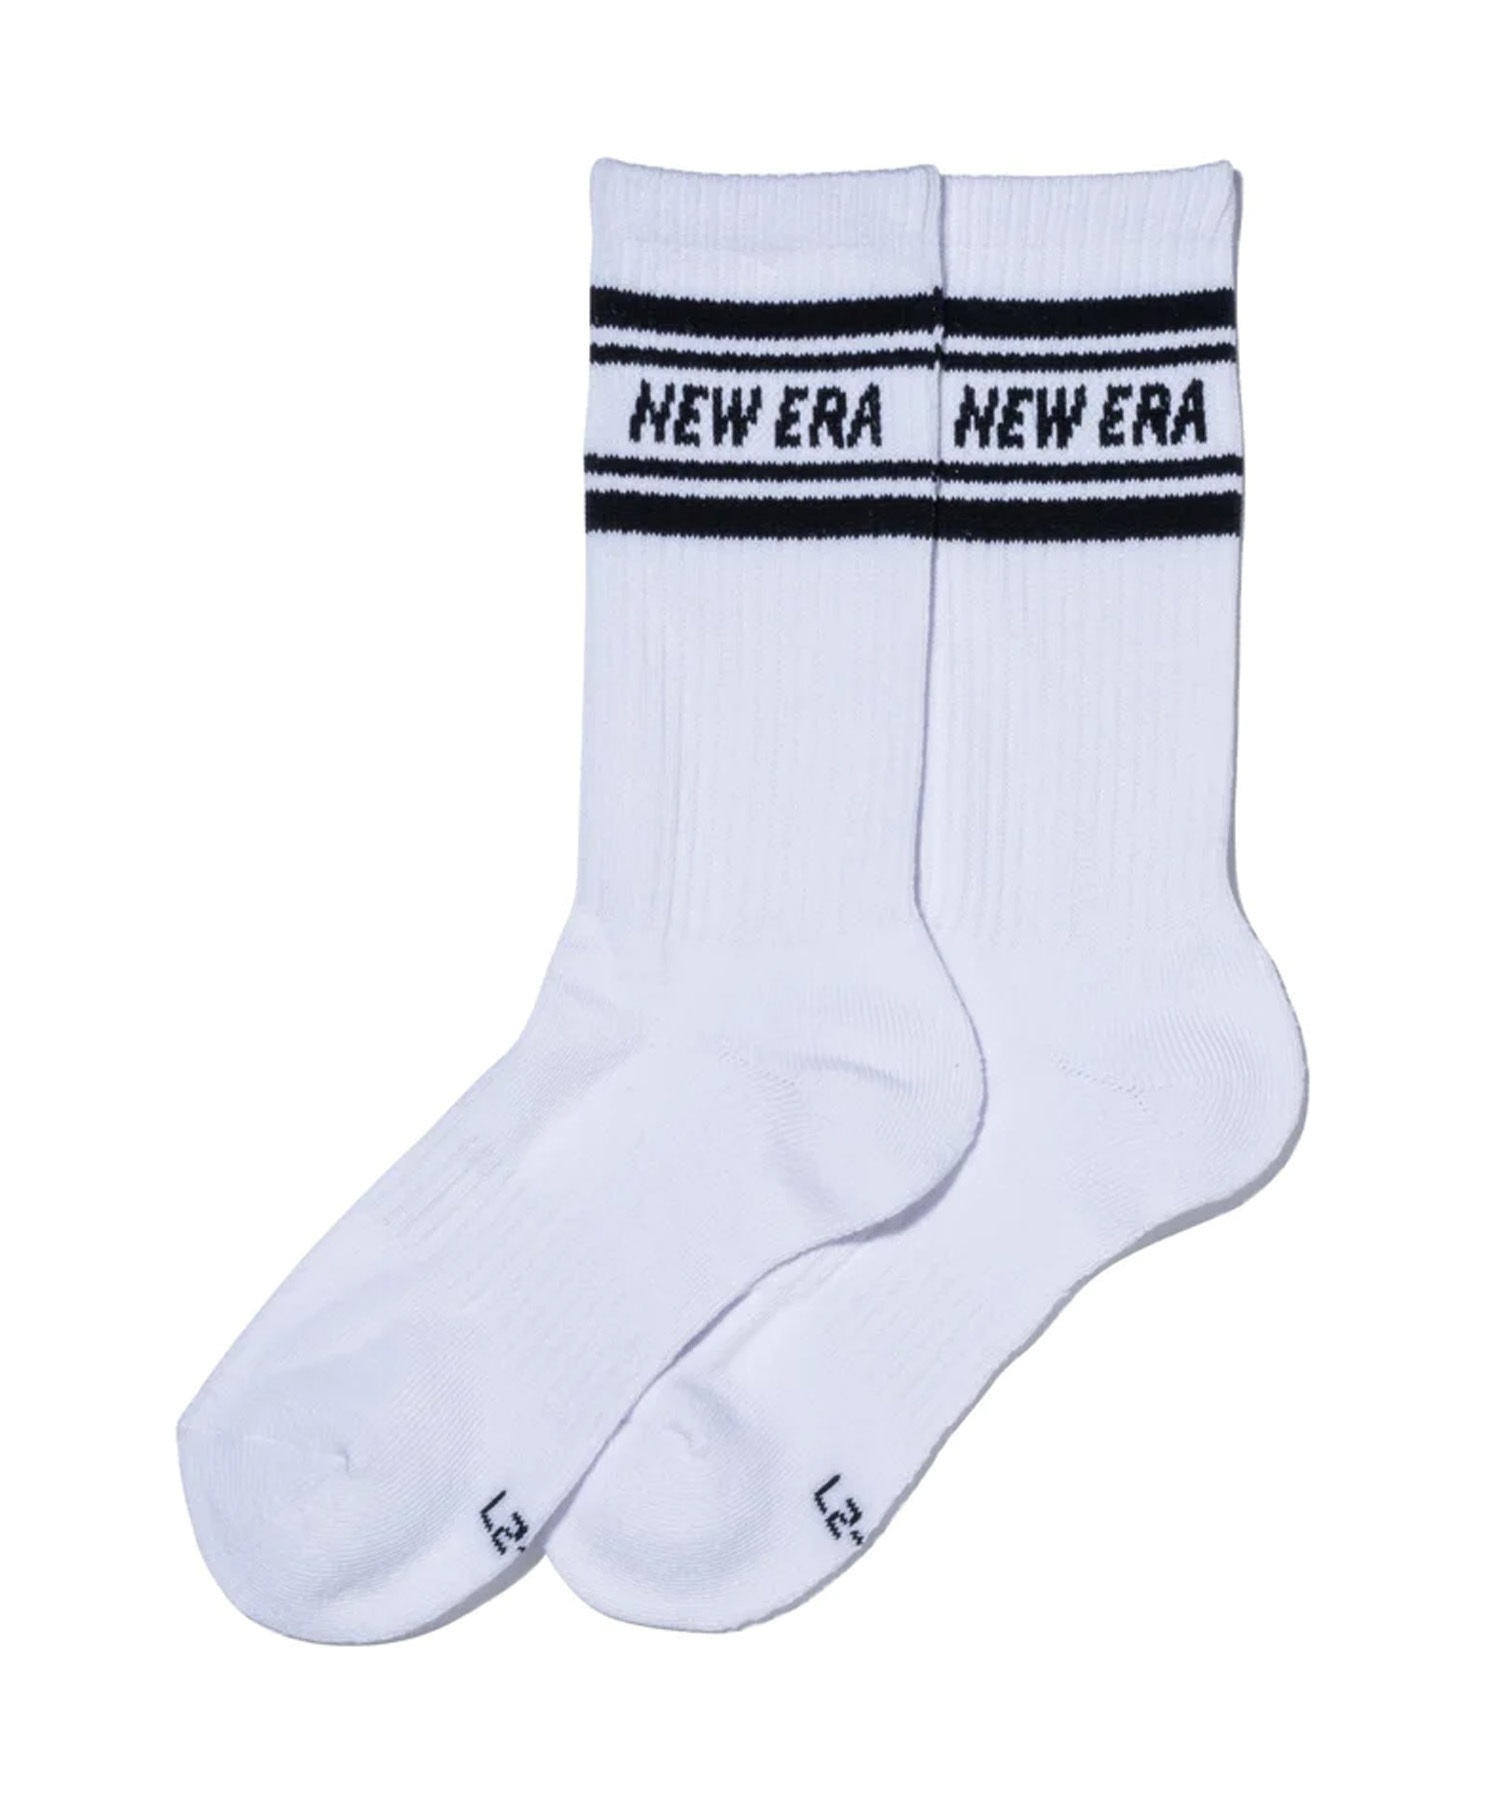 NEW ERA ニューエラ ソックス クルー 3ペア ライン マルチ ブラック ホワイト ネイビー 靴下 ラインソックス 13529422(MUL-21-23cm)